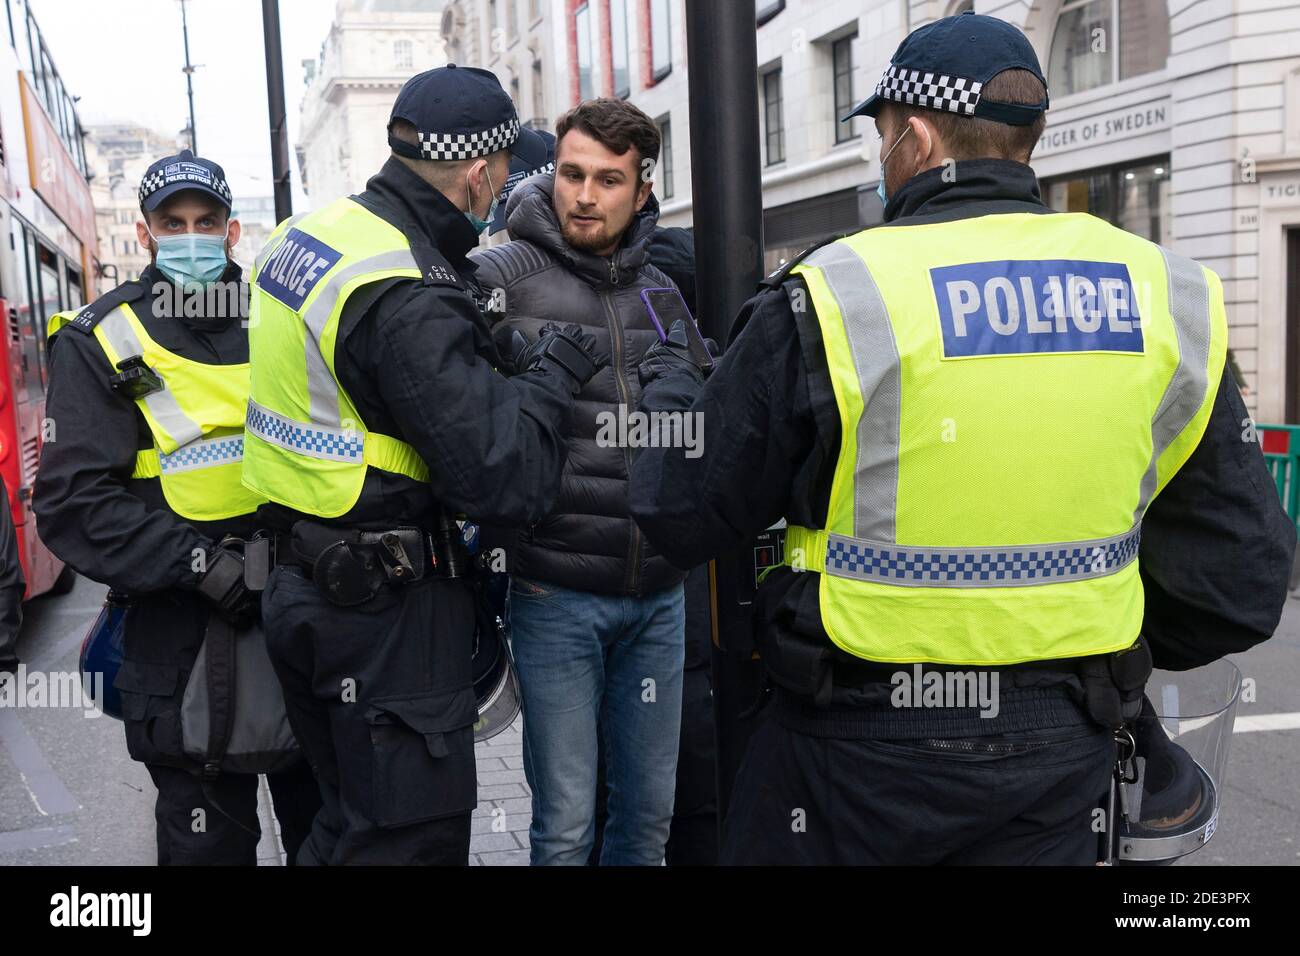 Londres, Grande-Bretagne. 28 novembre 2020. Un manifestant est détenu par des policiers lors d'une manifestation anti-verrouillage à Londres, en Grande-Bretagne, le 28 novembre 2020. Plus de 60 personnes ont été arrêtées samedi, alors que des manifestants anti-verrouillage se sont affrontés avec la police dans le centre de Londres, selon les médias locaux. Credit: Ray Tang/Xinhua/Alay Live News Banque D'Images